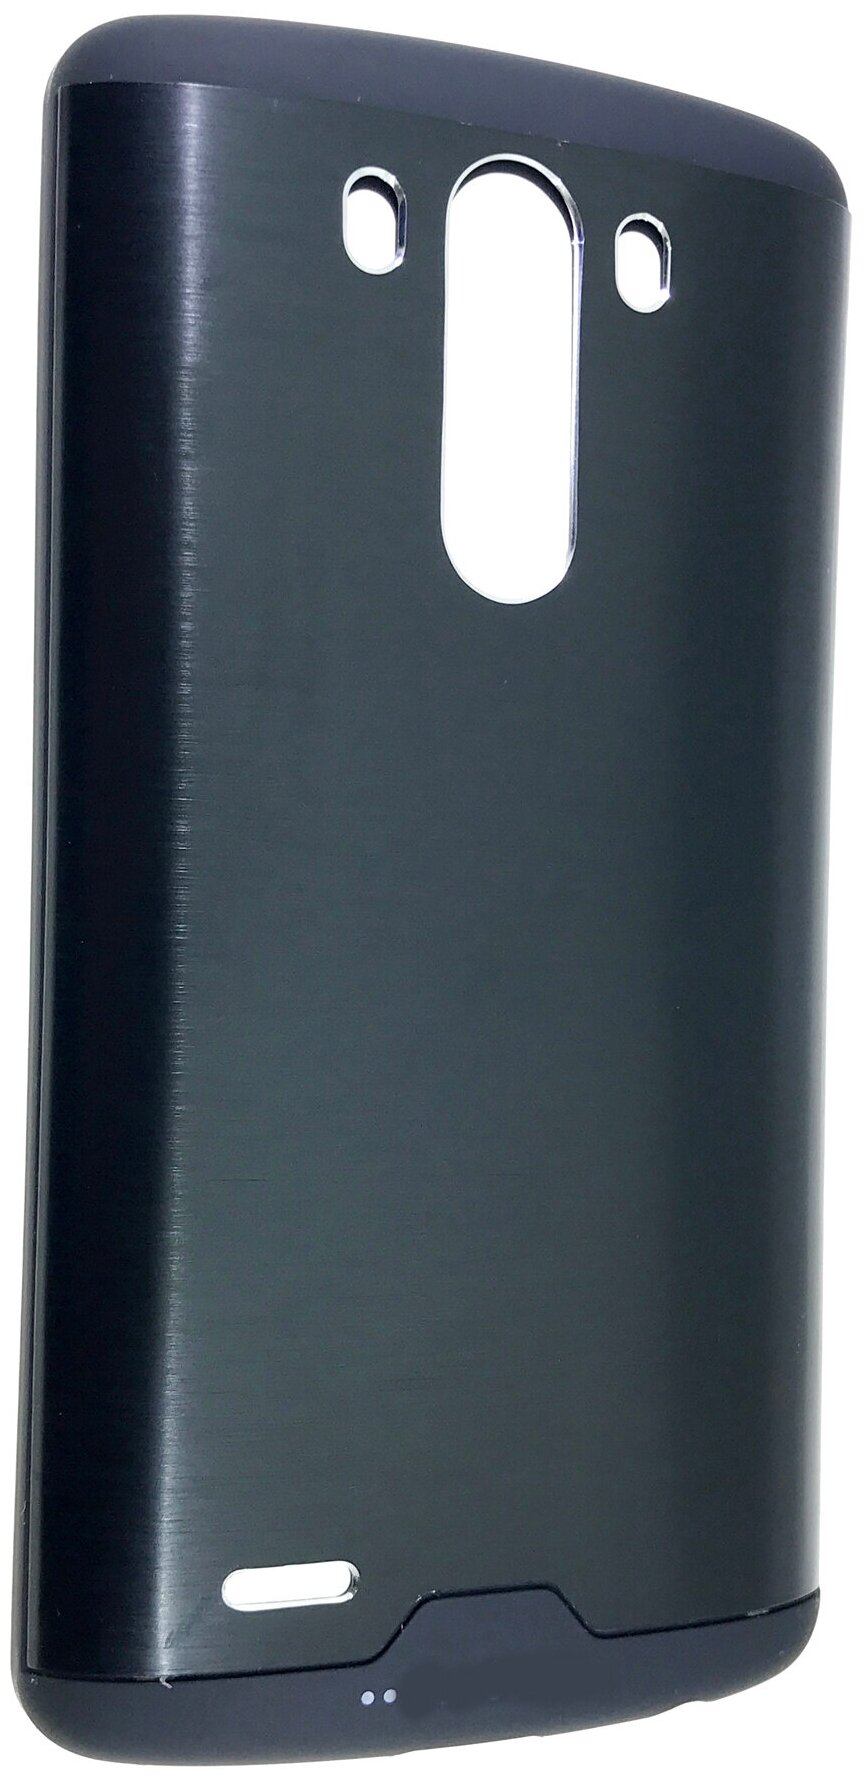 Чехол на смартфон LG G3 накладка противоударная, типа клип-кейс с алюминиевой спинкой и нескользким покрытием